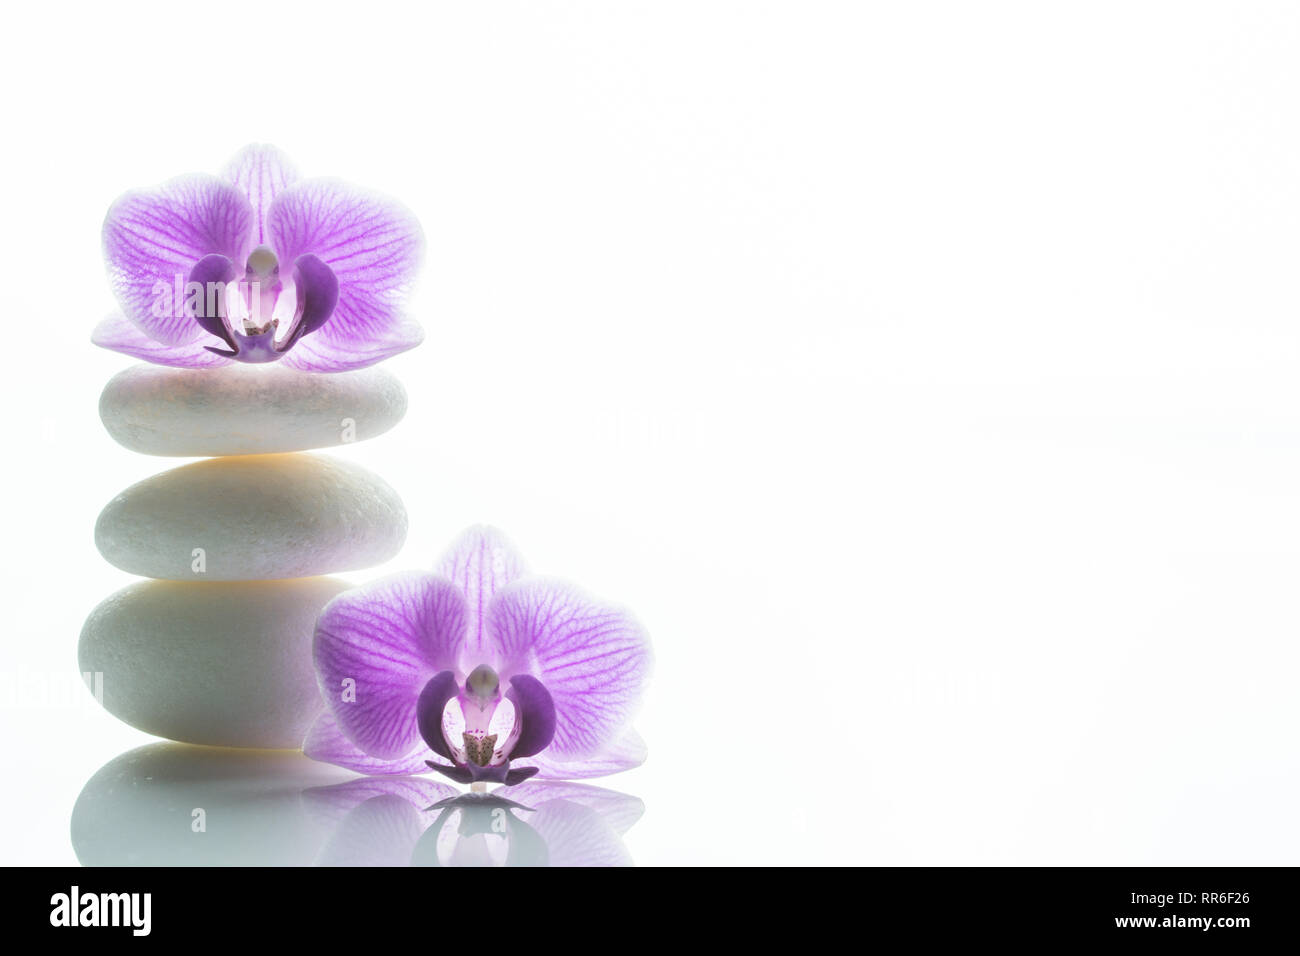 Zwei purple orchid Blossoms - man oben auf einem Stapel von drei weißen roundstones und die anderen neben ihm - viel Text Raum Stockfoto